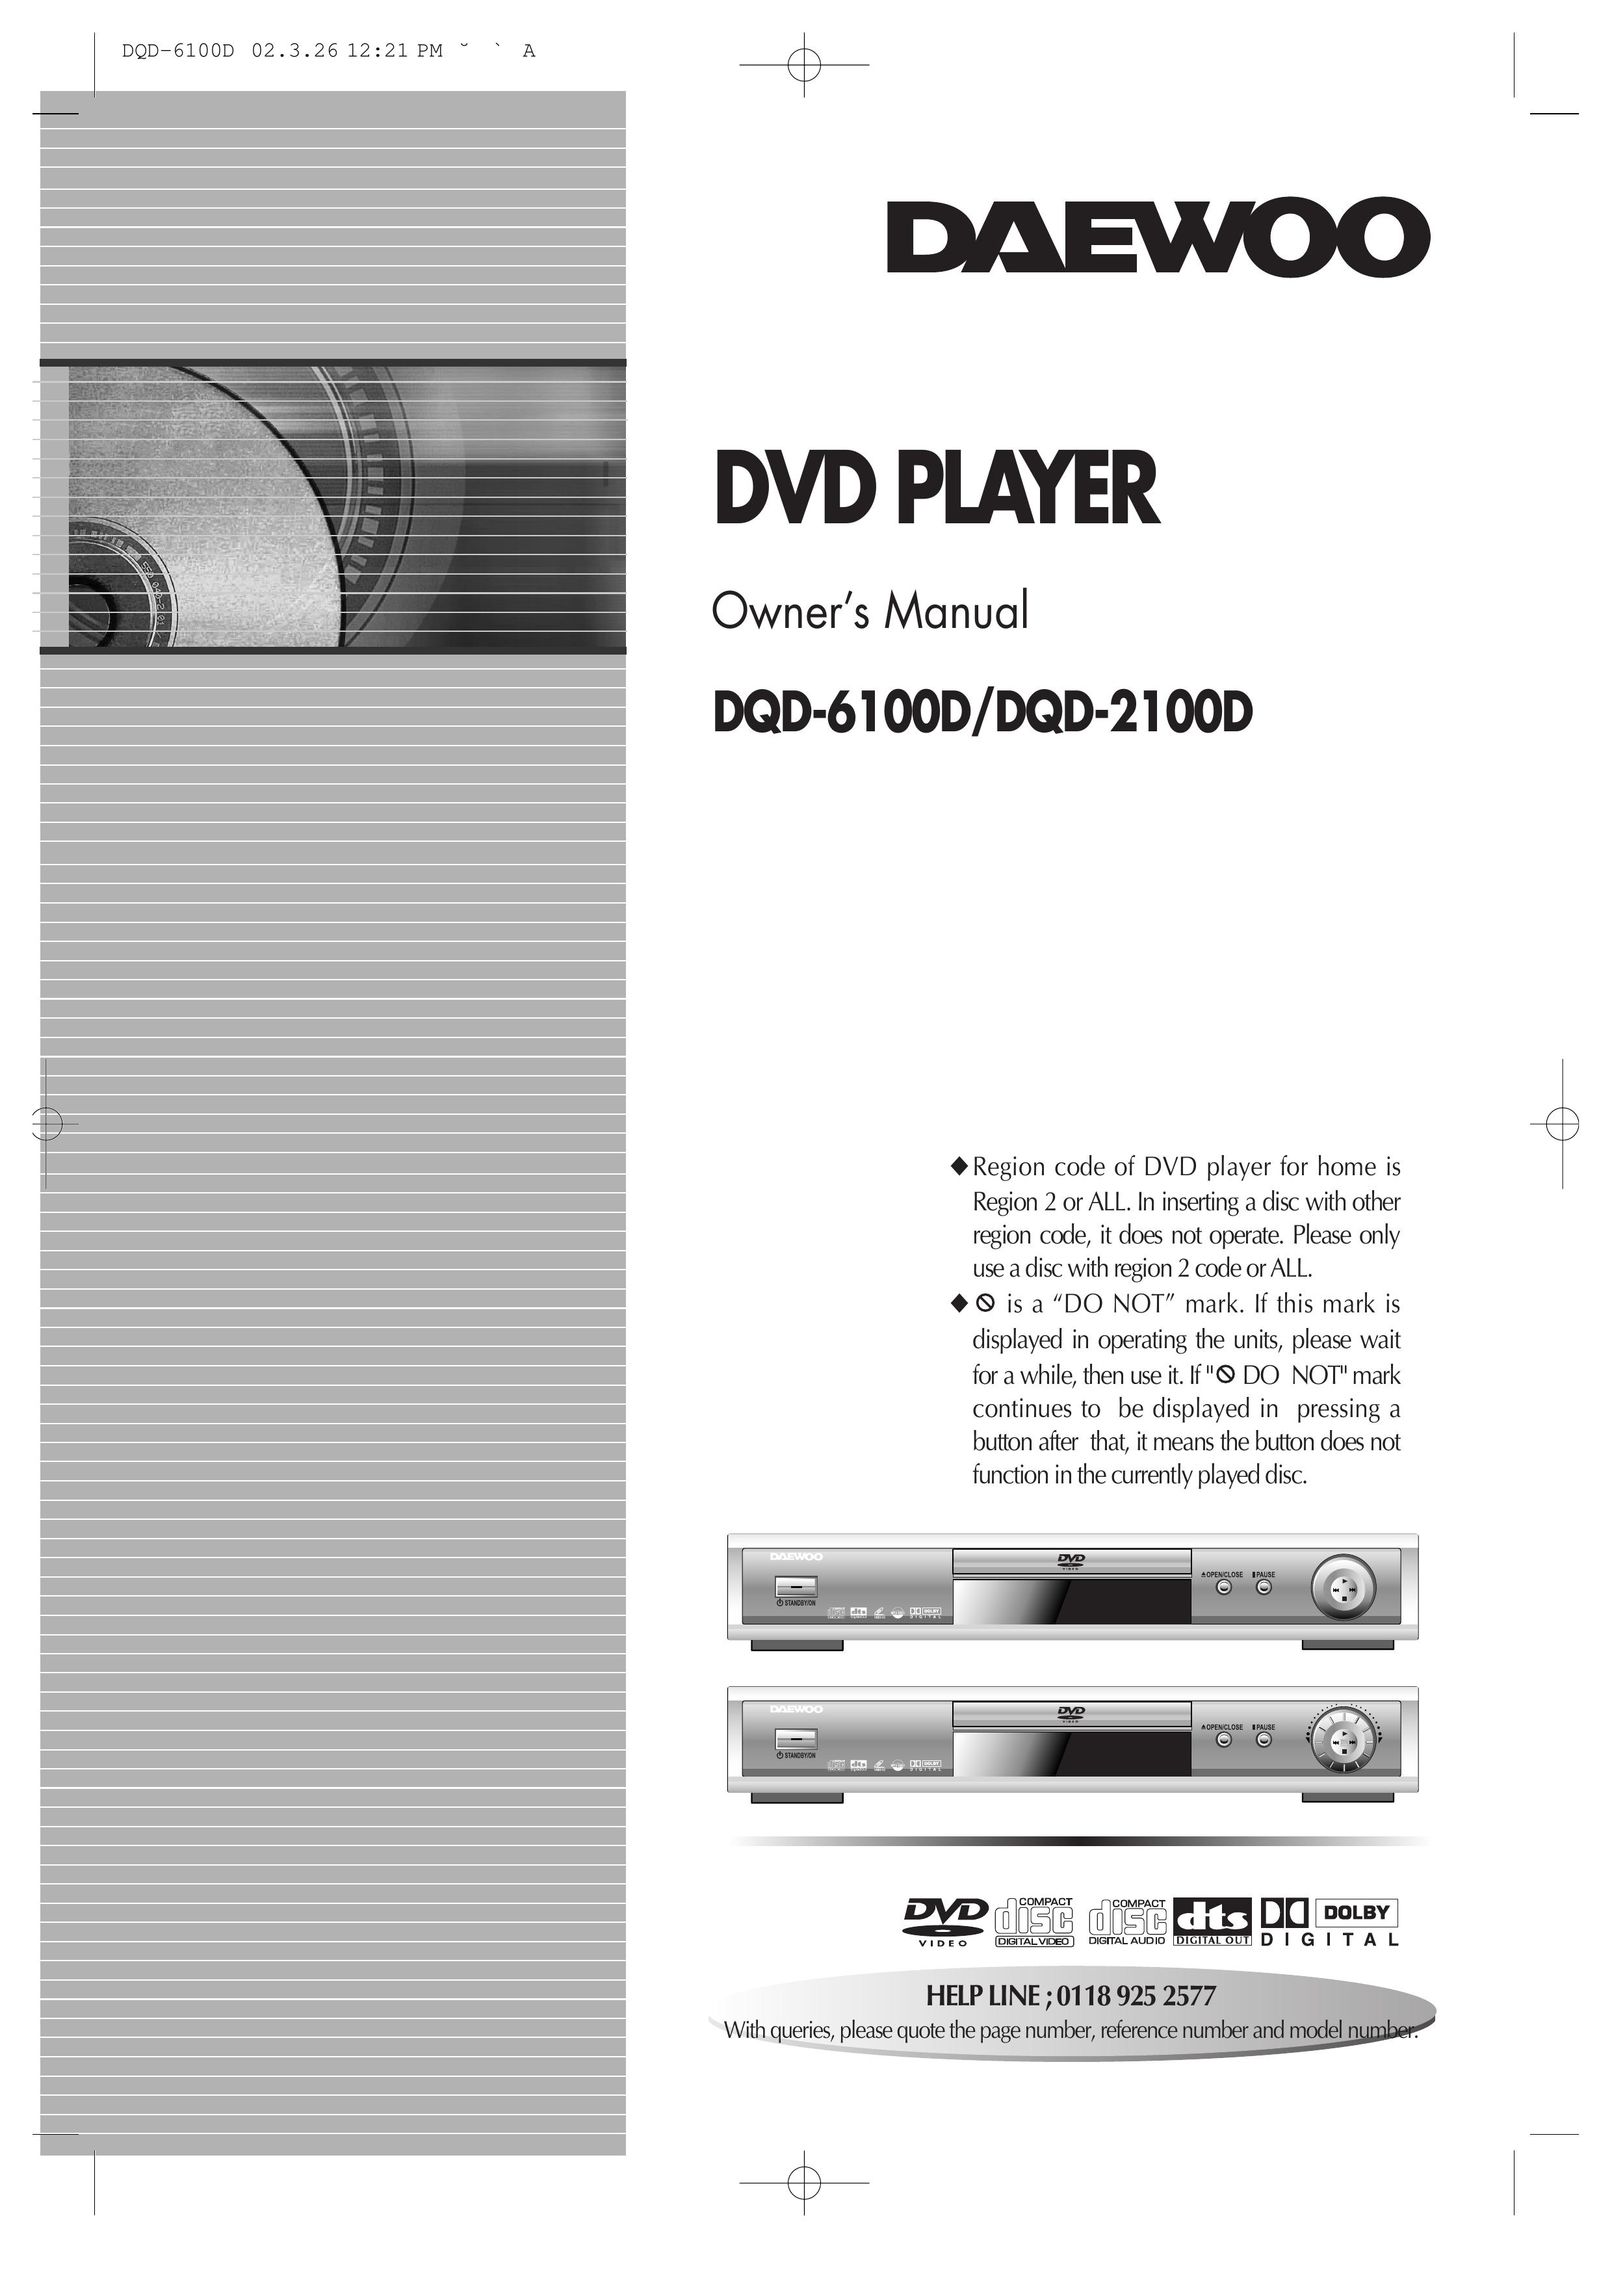 Daewoo dqd-6100d DVD Player User Manual